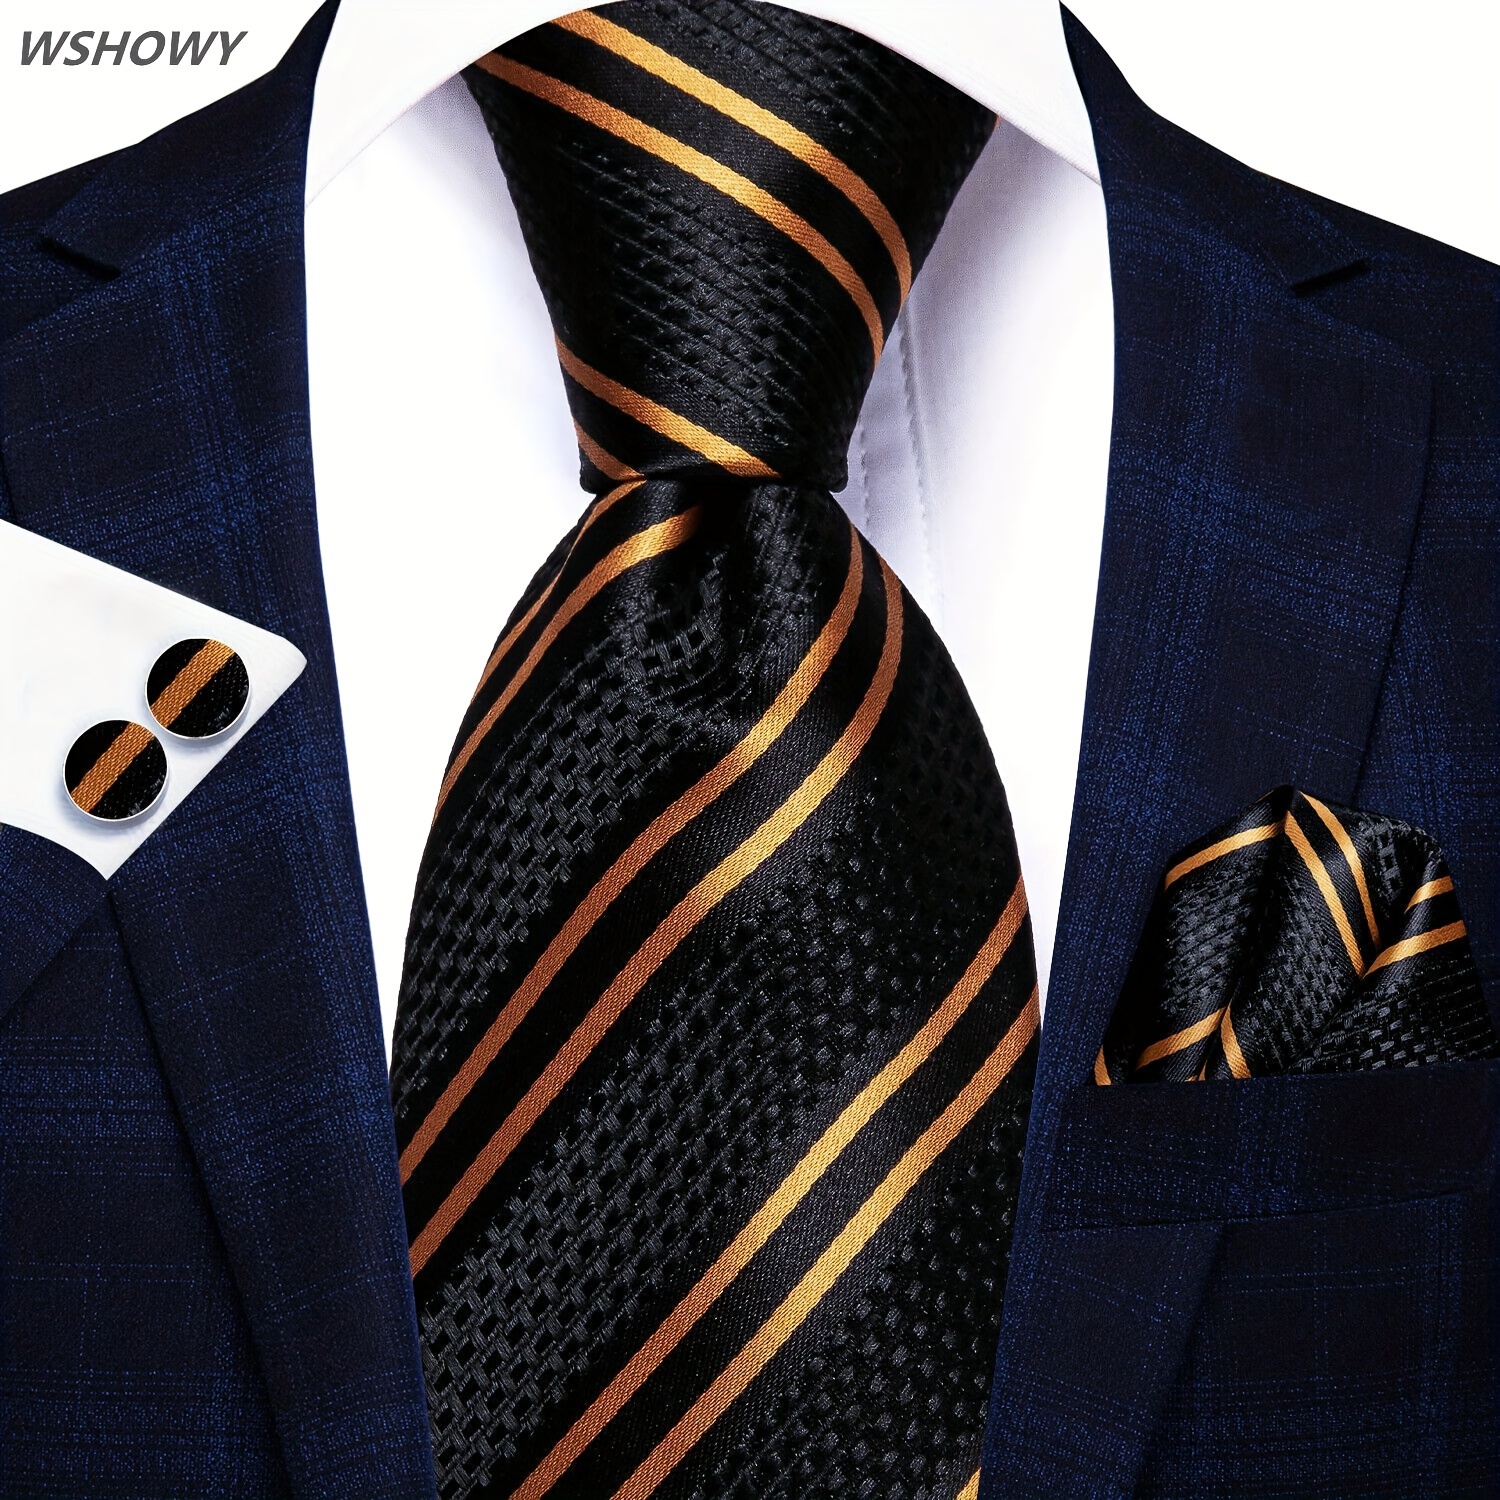 

1set Black Golden Striped Silk Tie Set, Necktie & Handkerchief & Cufflinks Set, Father's Day Gift